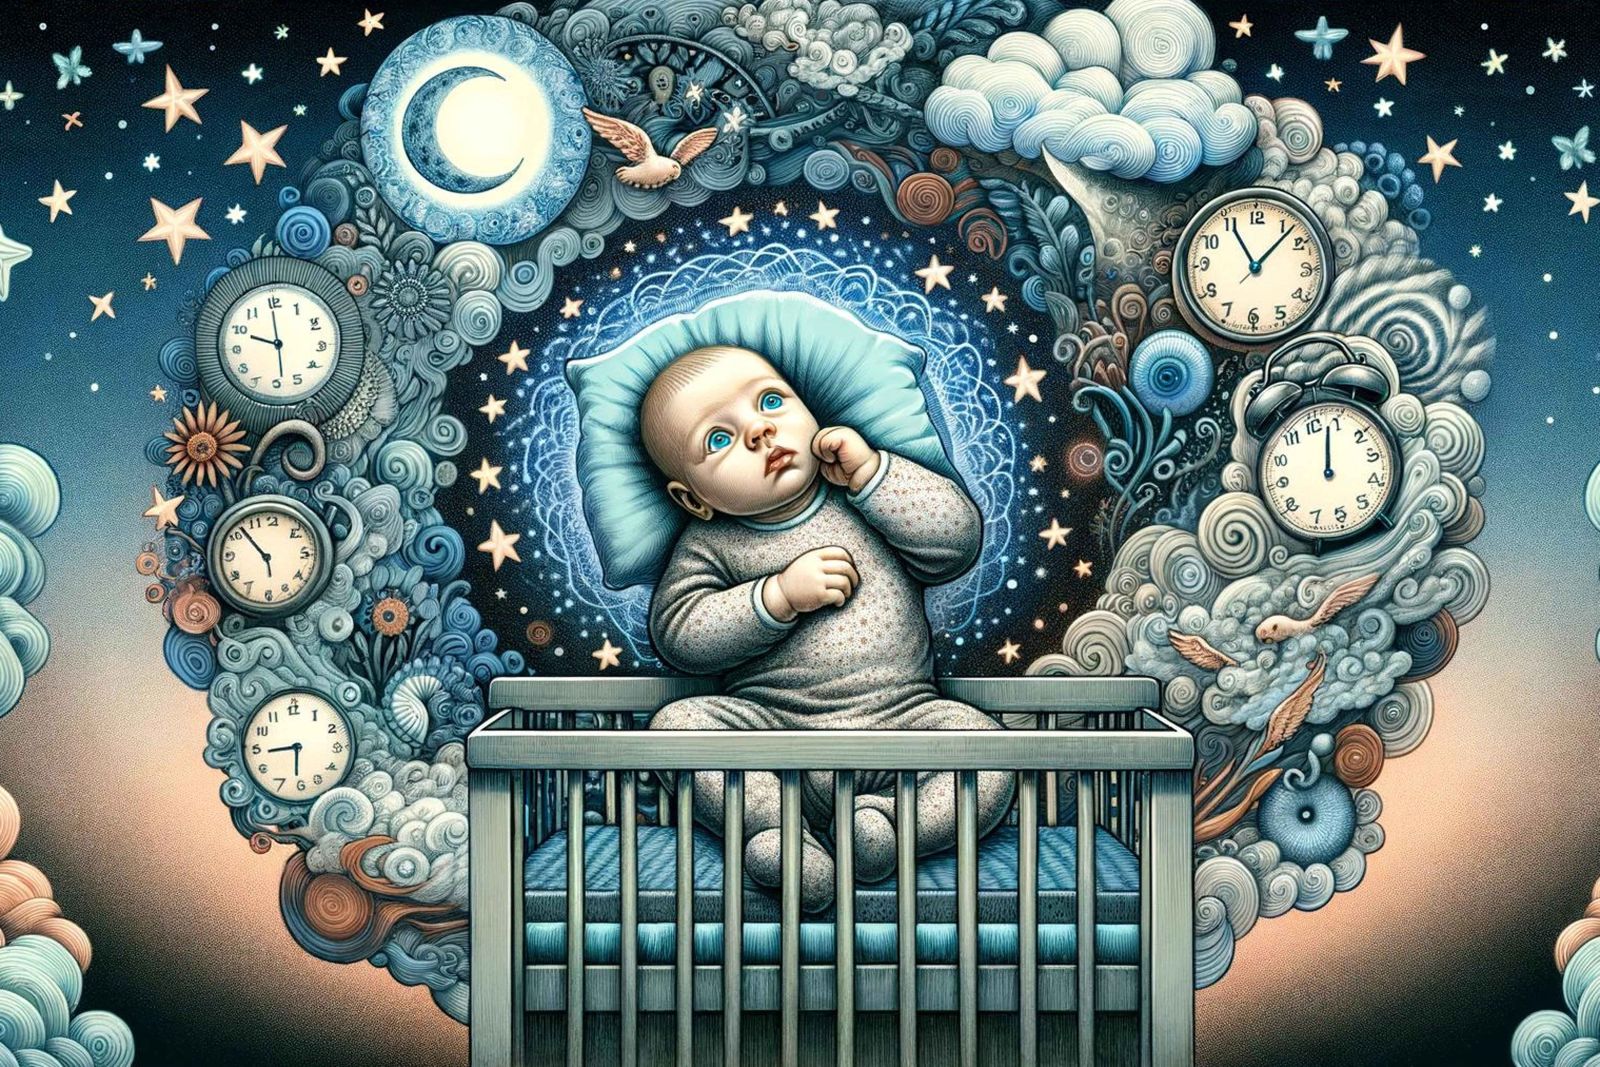 Ein Baby liegt auf dem Rücken in einem Gitterbett und blickt nach oben, umgeben von einem traumartigen Himmel voller Sterne, Mondphasen und schwebenden Uhren, die ein surreales Gefühl der Zeit vermitteln.